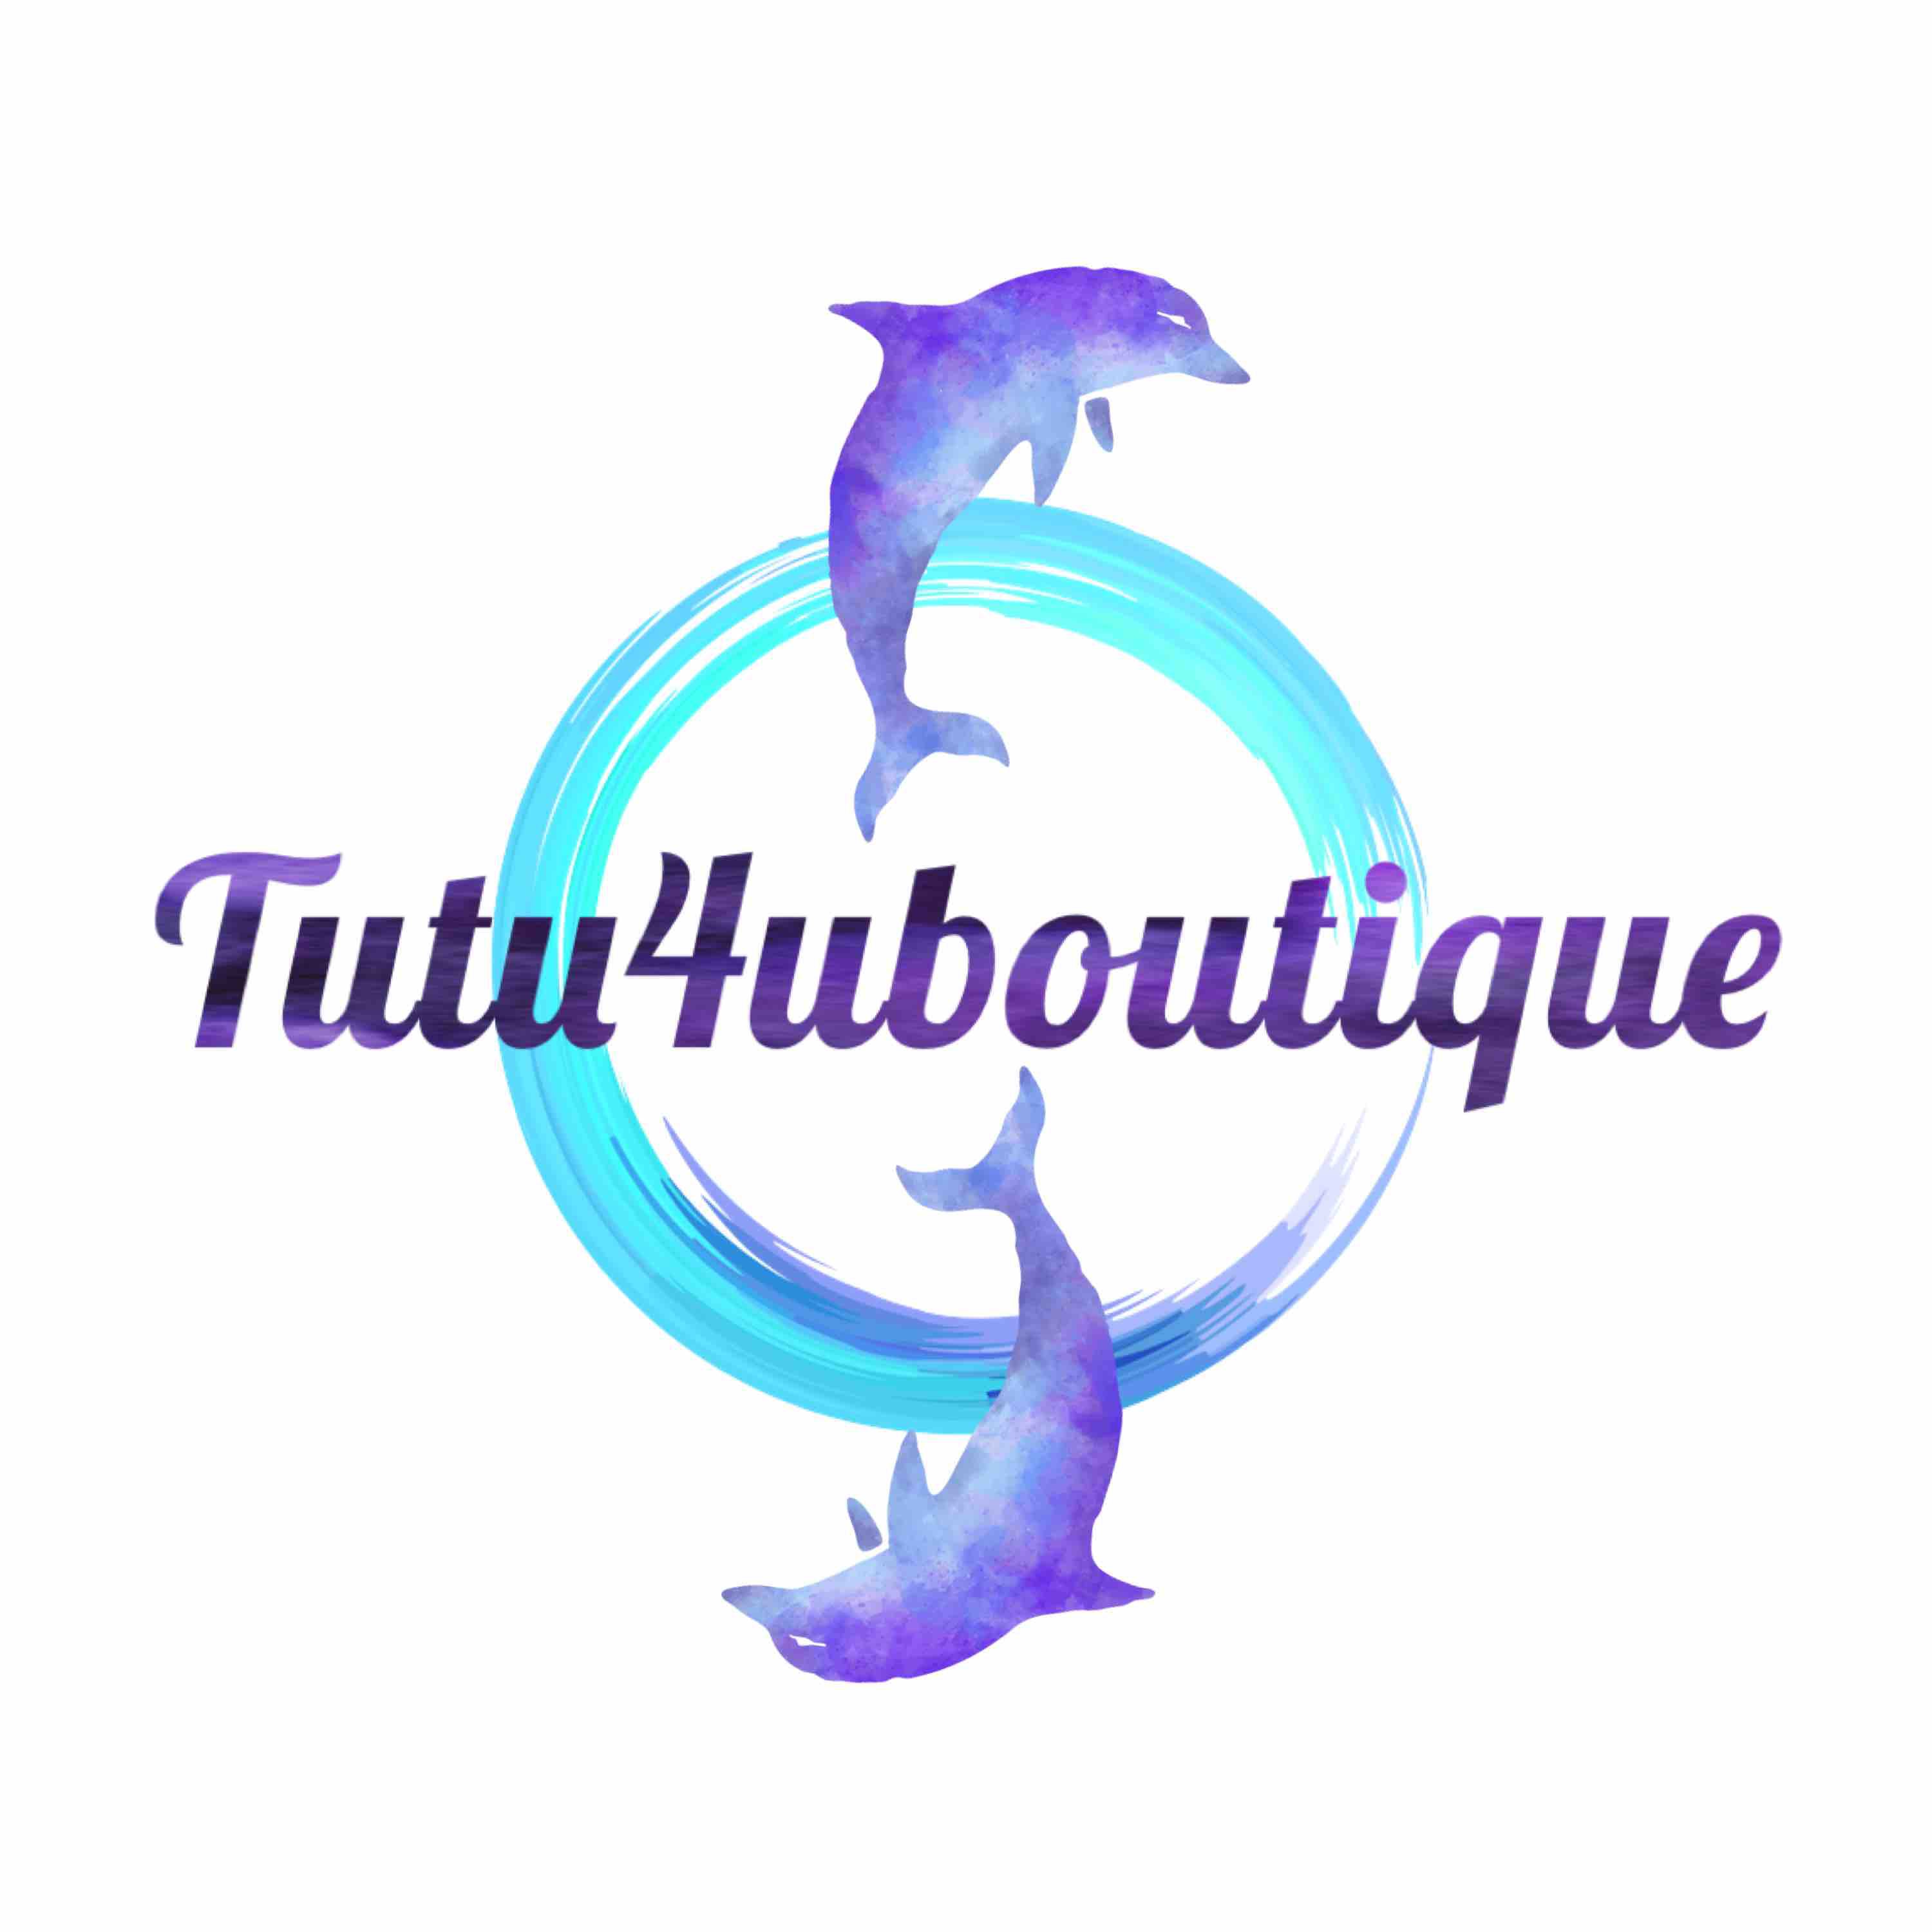 Tutu4uboutique